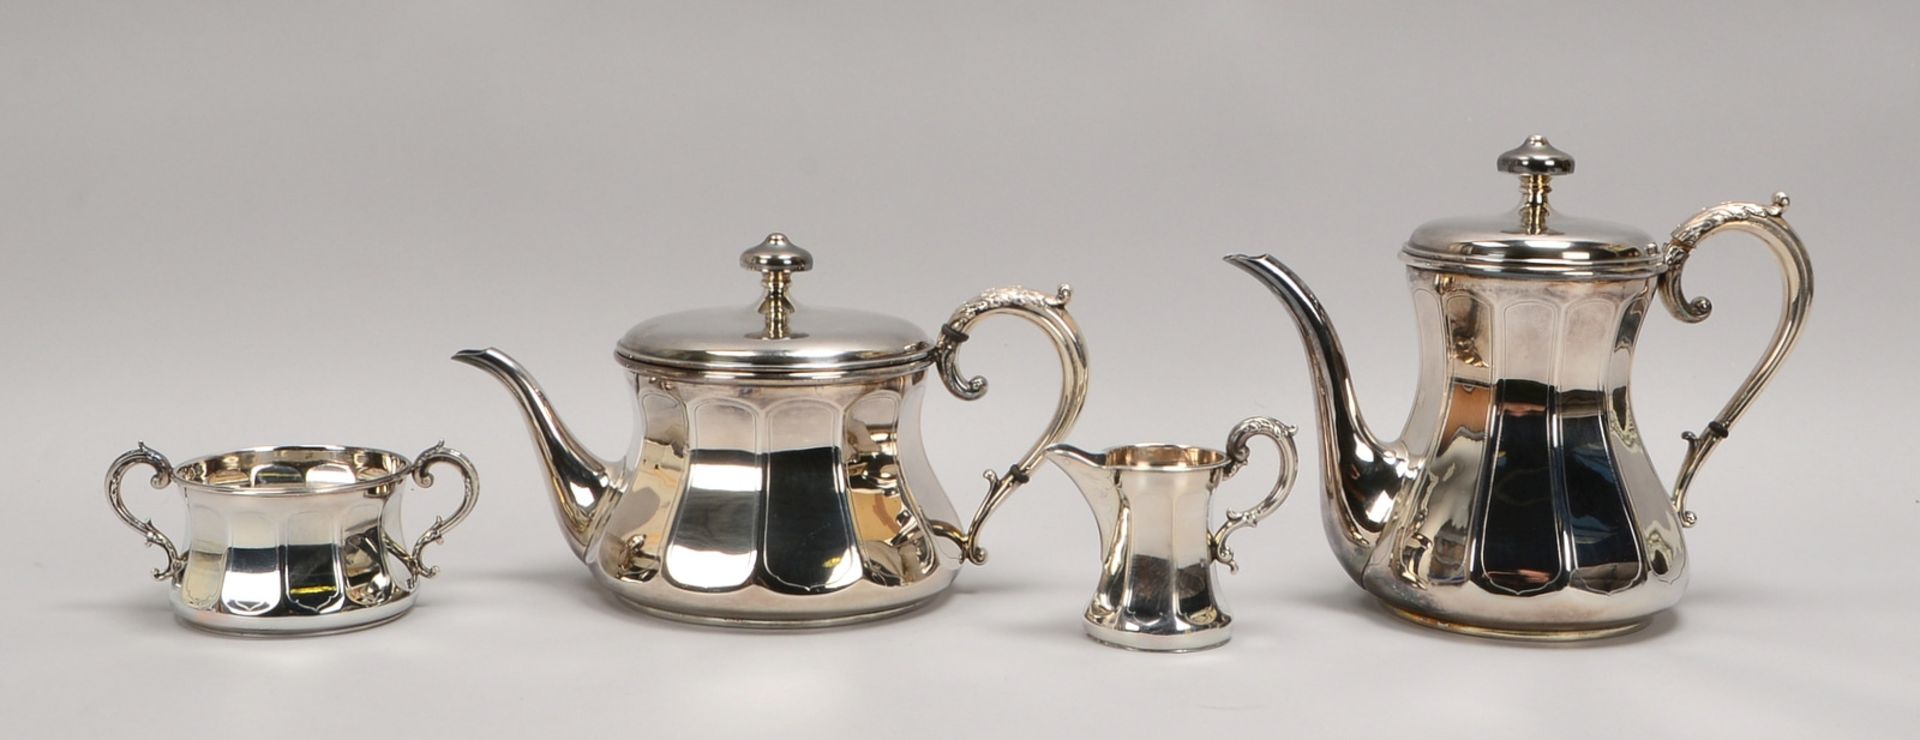 Kaffee-/Teekern, 830/800 Silber: Kaffee- und Teekanne, Zucker und Sahne; Gew. 1.975 g